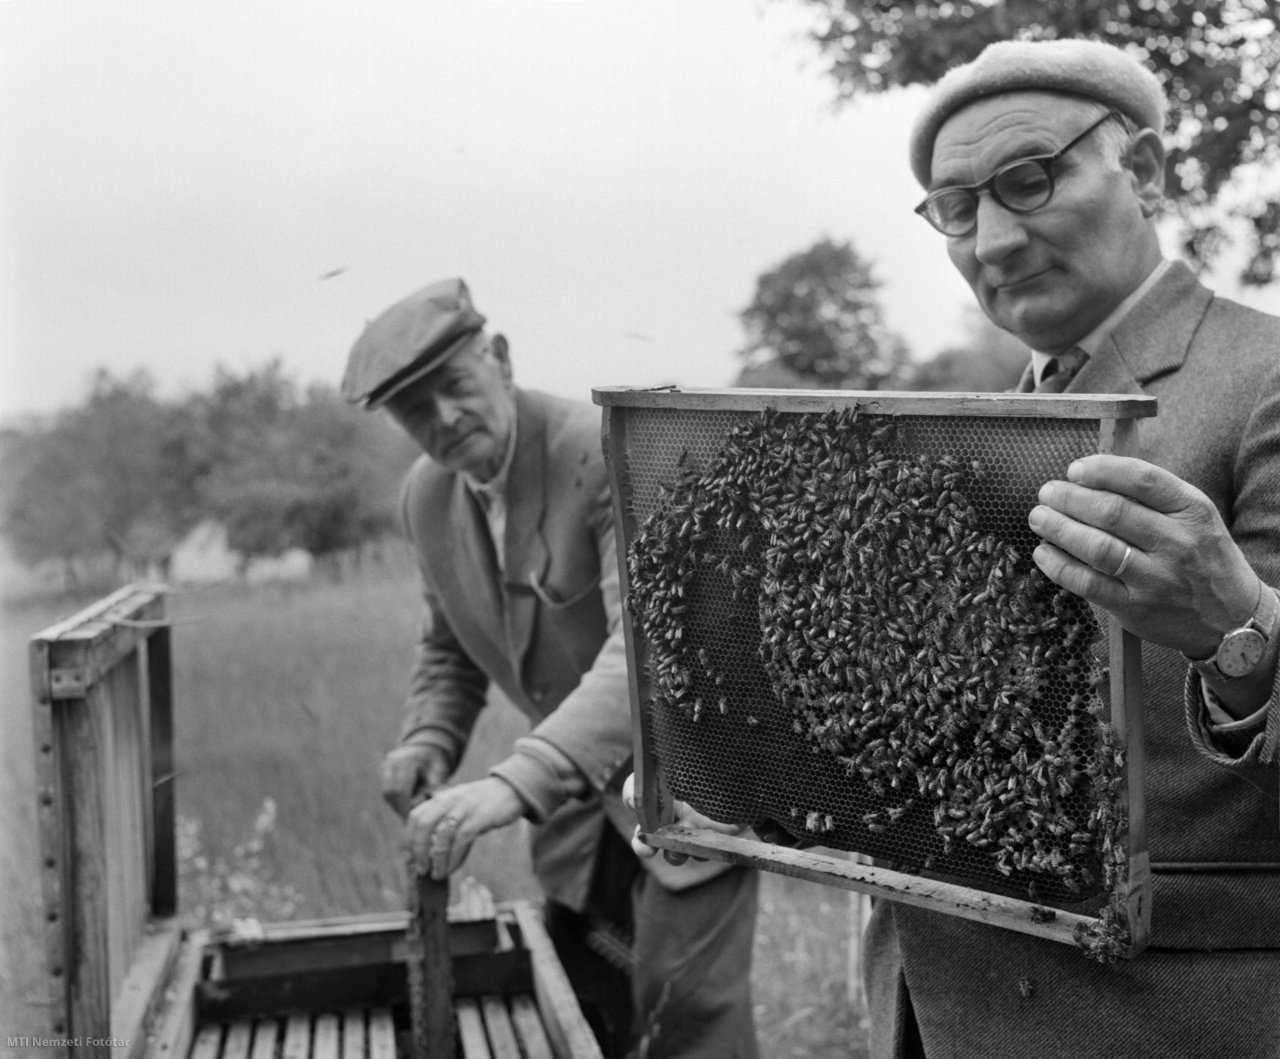 Magyarország, 1964. május 22. Cicatricis Géza és Zalavári János termelési felelős, a Kaposvári Méhész Szövetkezet tagjai ellenőrzik a kaptárkereteket. A szövetkezet több mint ötszáz tagja kilencezer méhcsaláddal megkezdte a vándoroltatást a megye akácosaiban. A somogyi méhészek 50 vagon méz szállítására kötöttek szerződést, amiből a kaposváriak 12 vagonnal szállítanak majd.